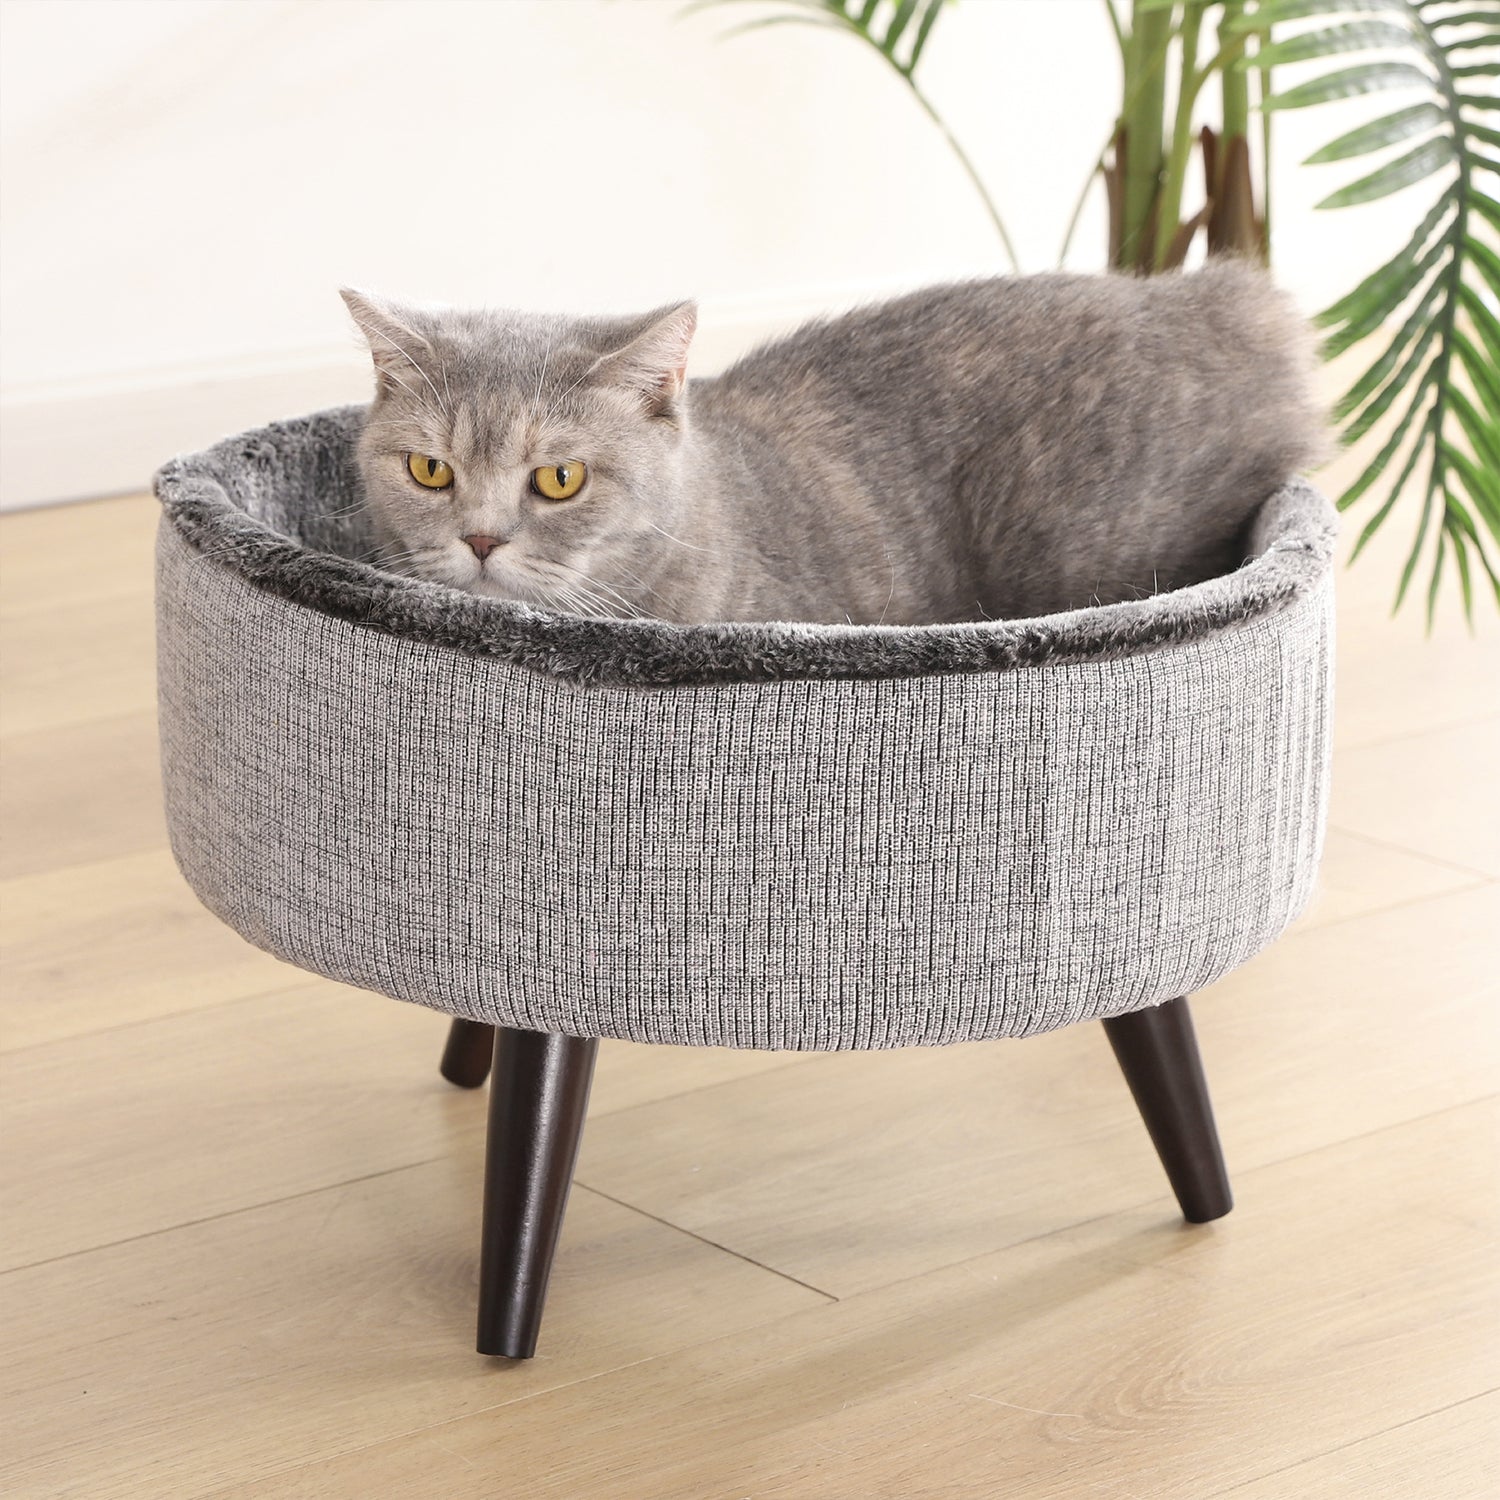 Cat Craft round Pet Cat Bed, Gray